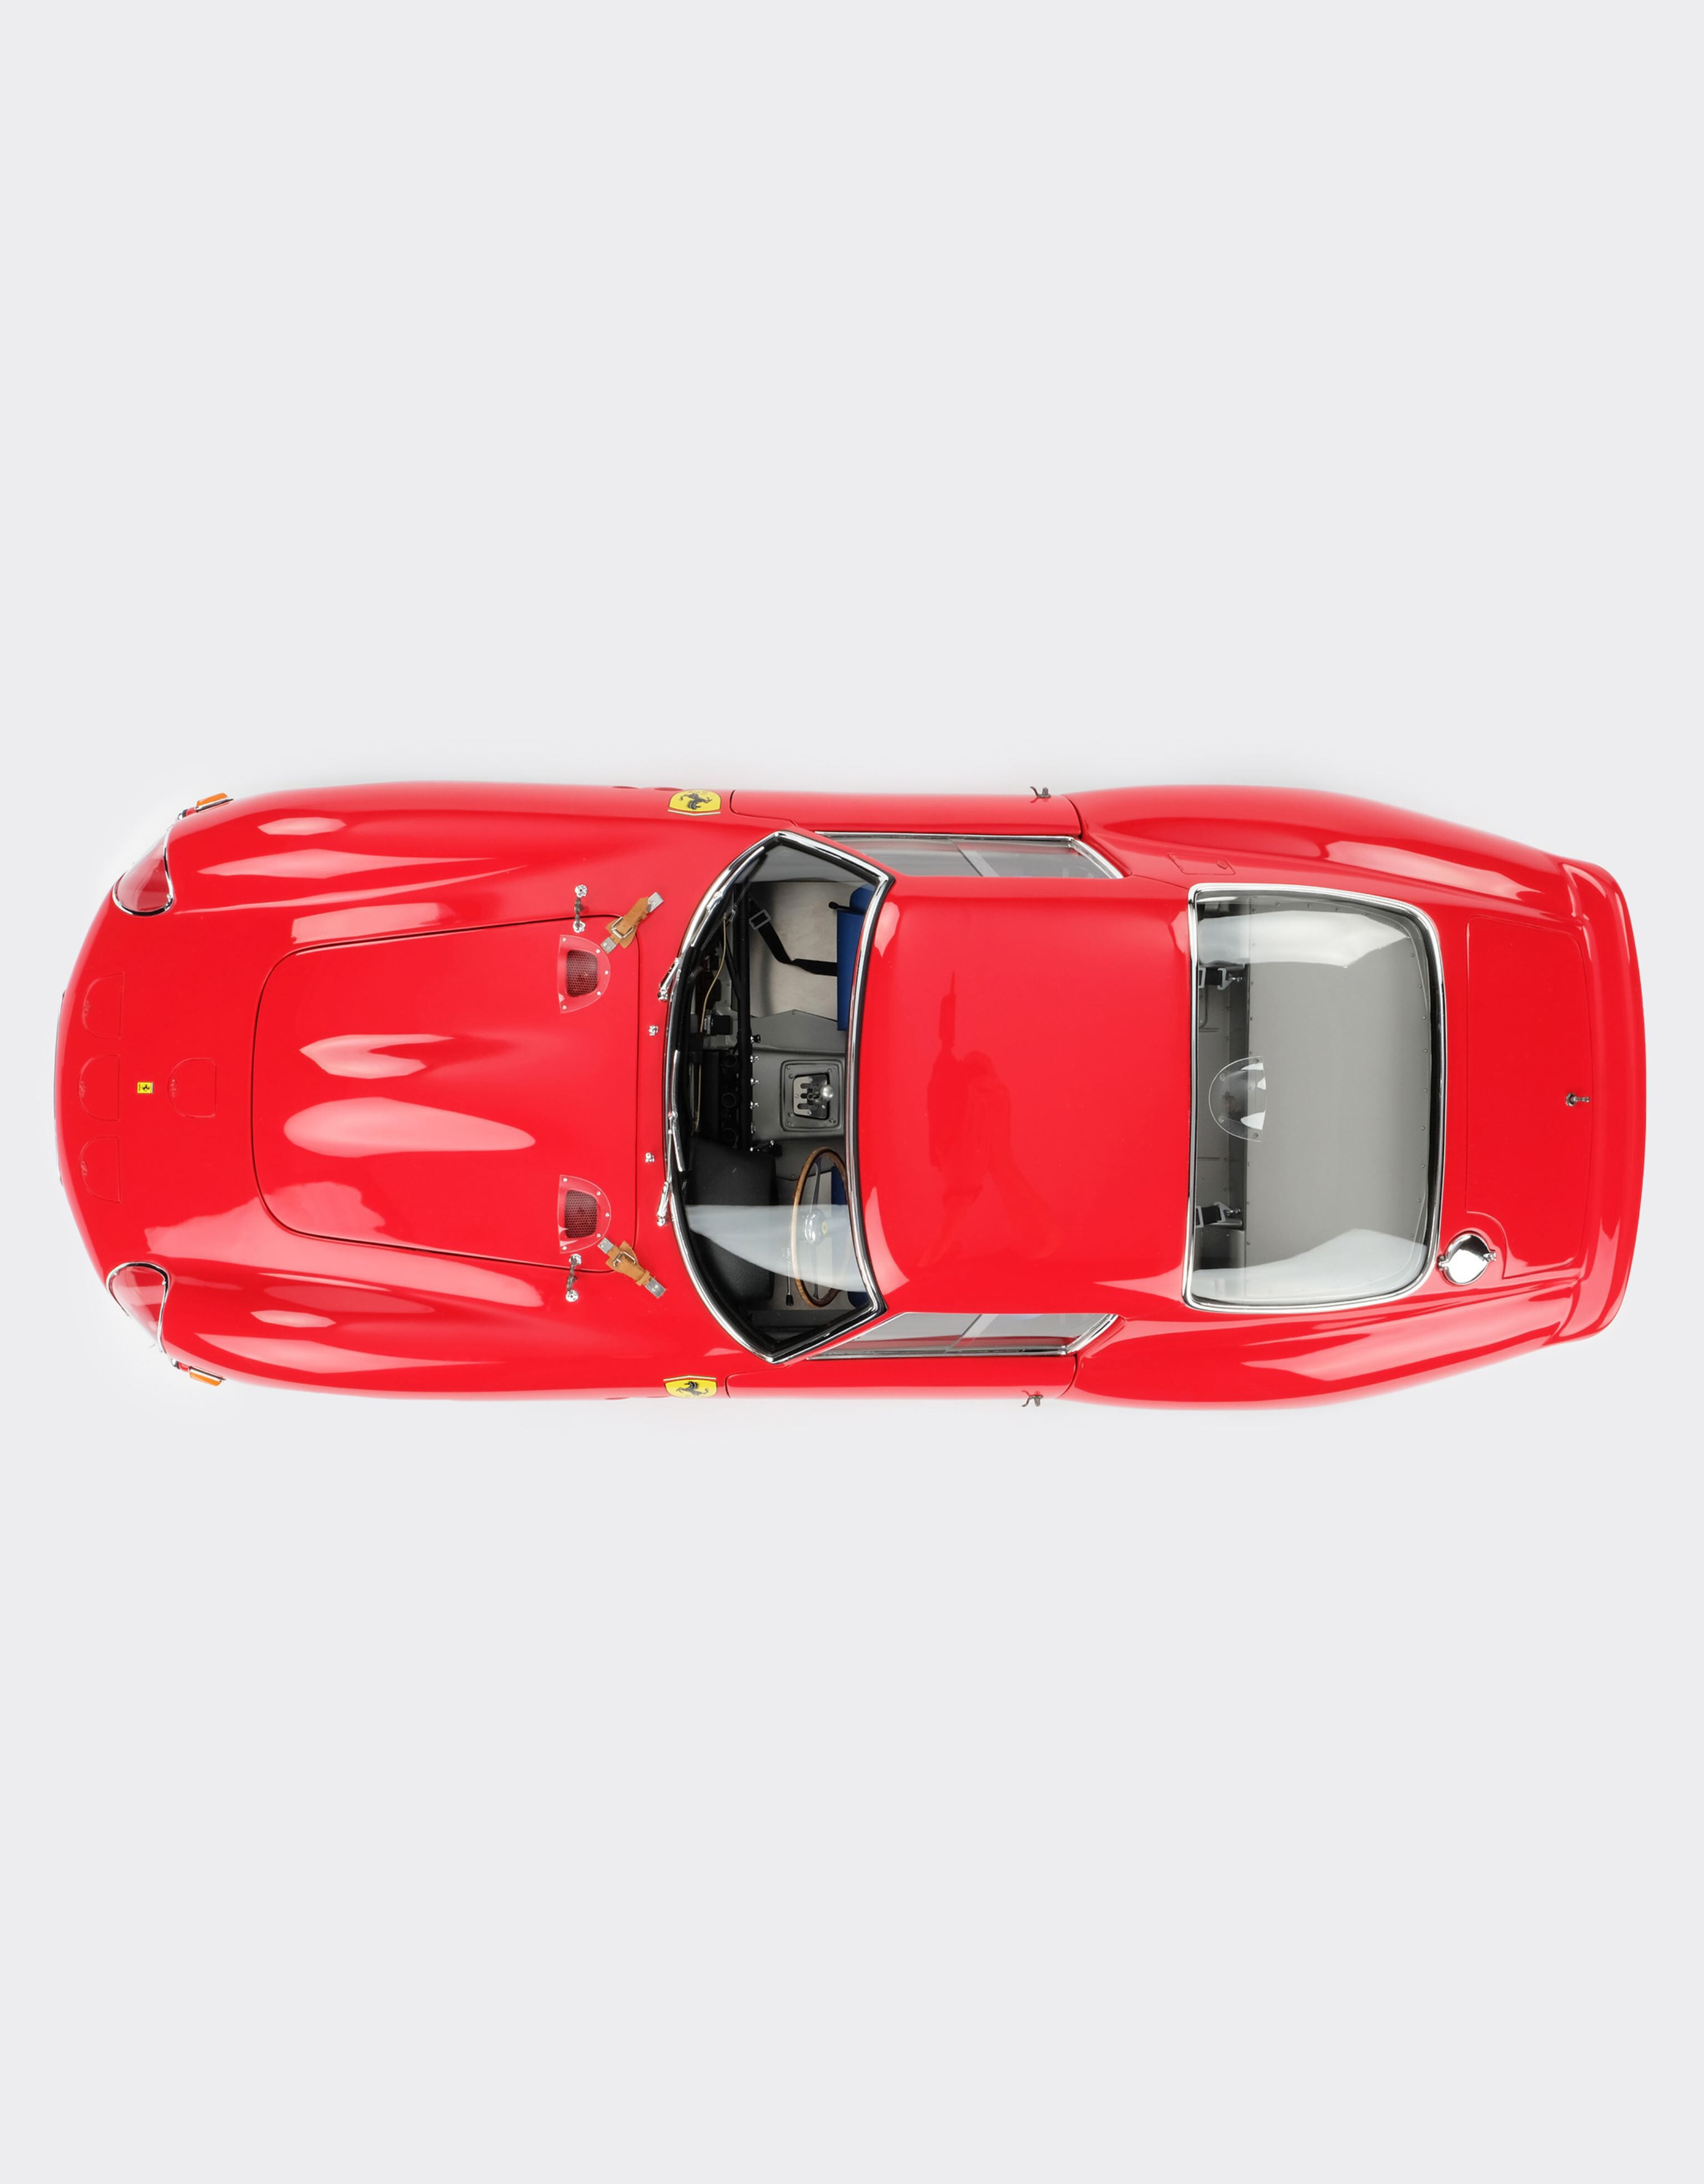 Ferrari Ferrari 250 GTO モデルカー 1:8スケール マルチカラー L1127f